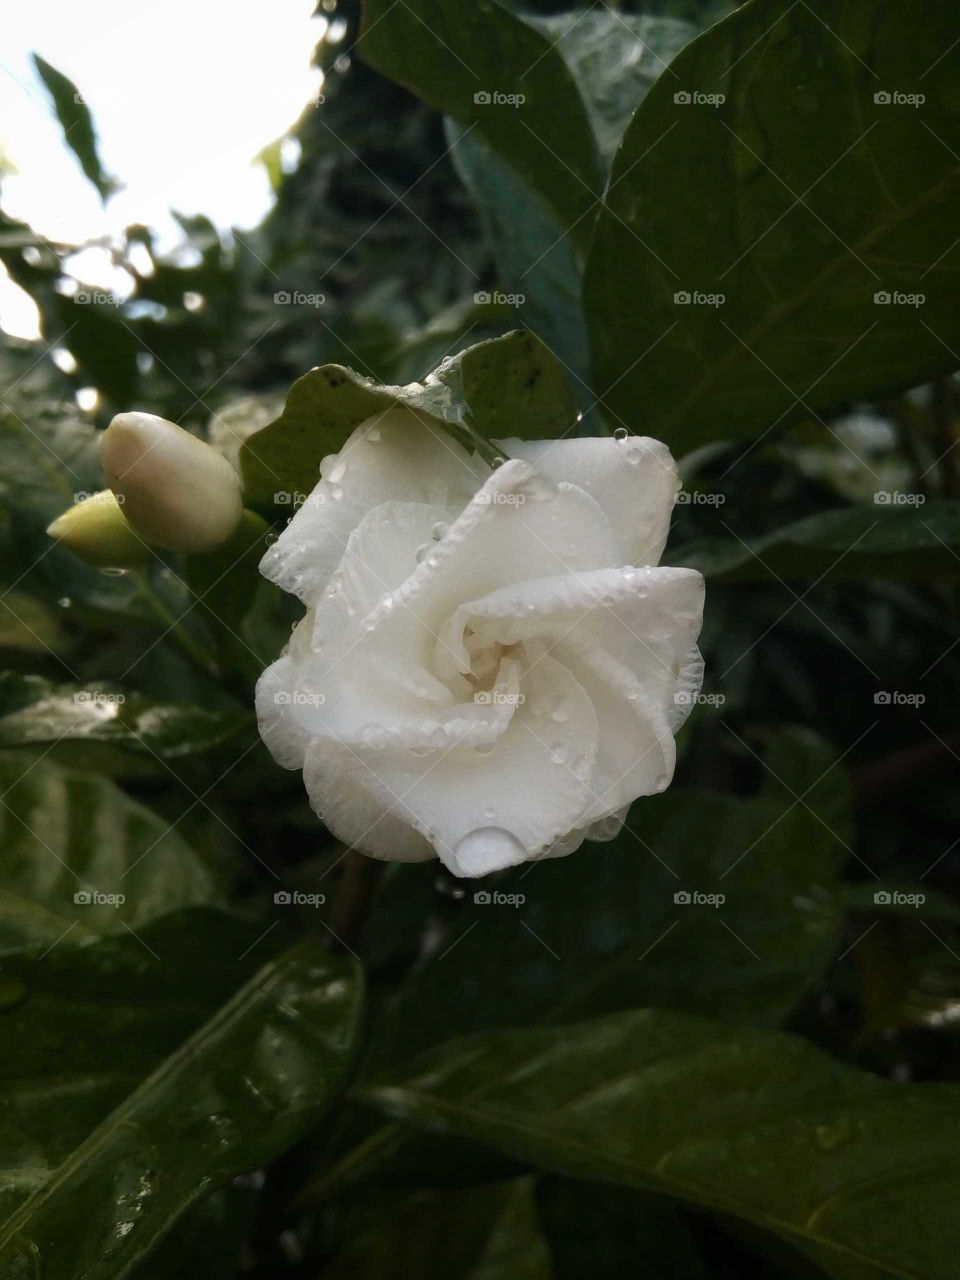 Shade of white
Fragrant
Flower